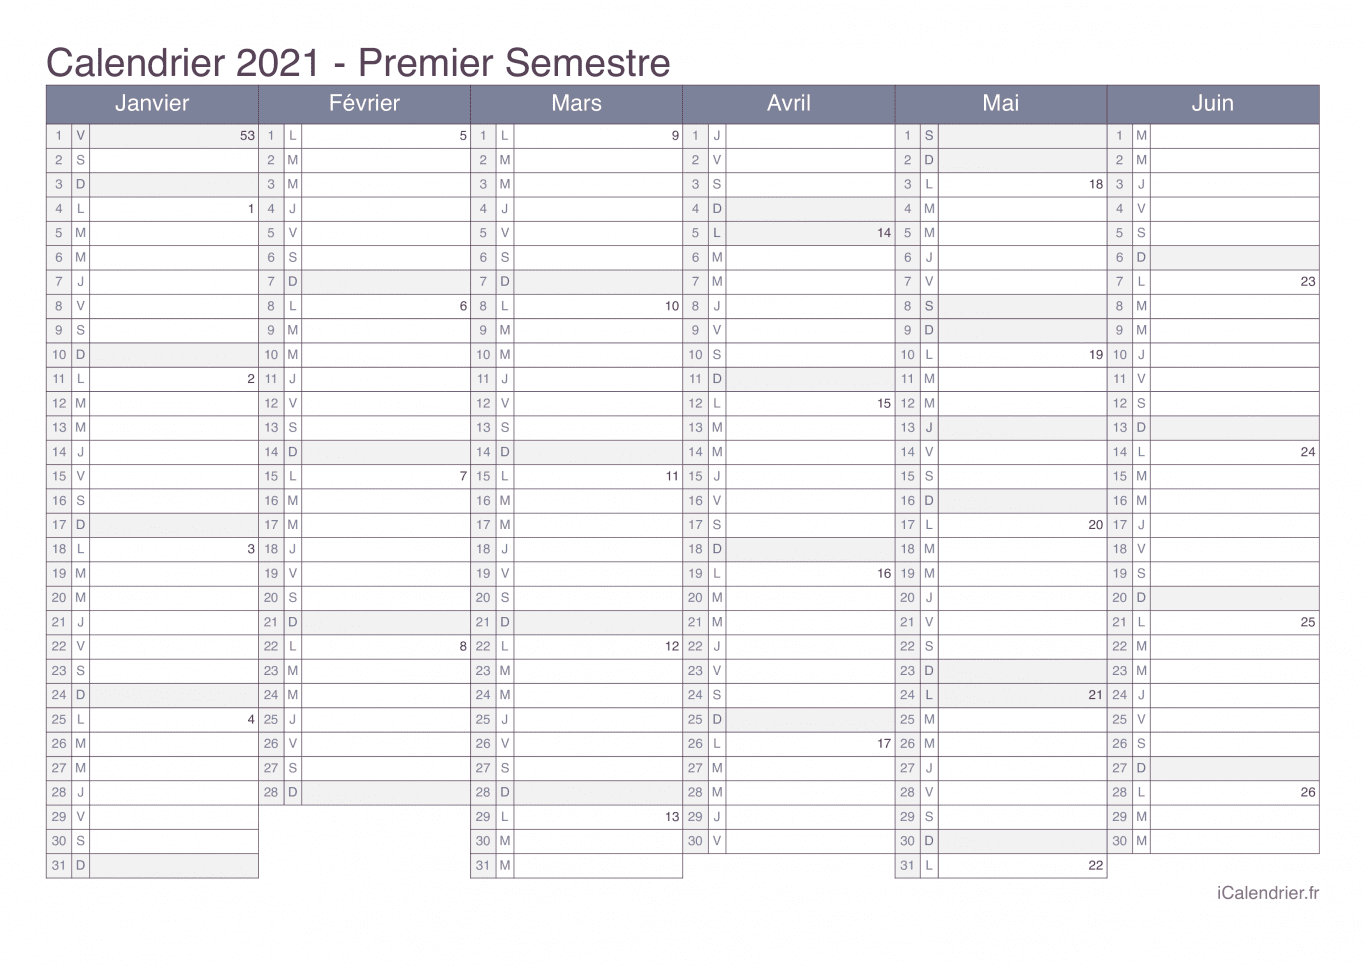 Calendrier par semestre avec numéros des semaines 2021 - Office